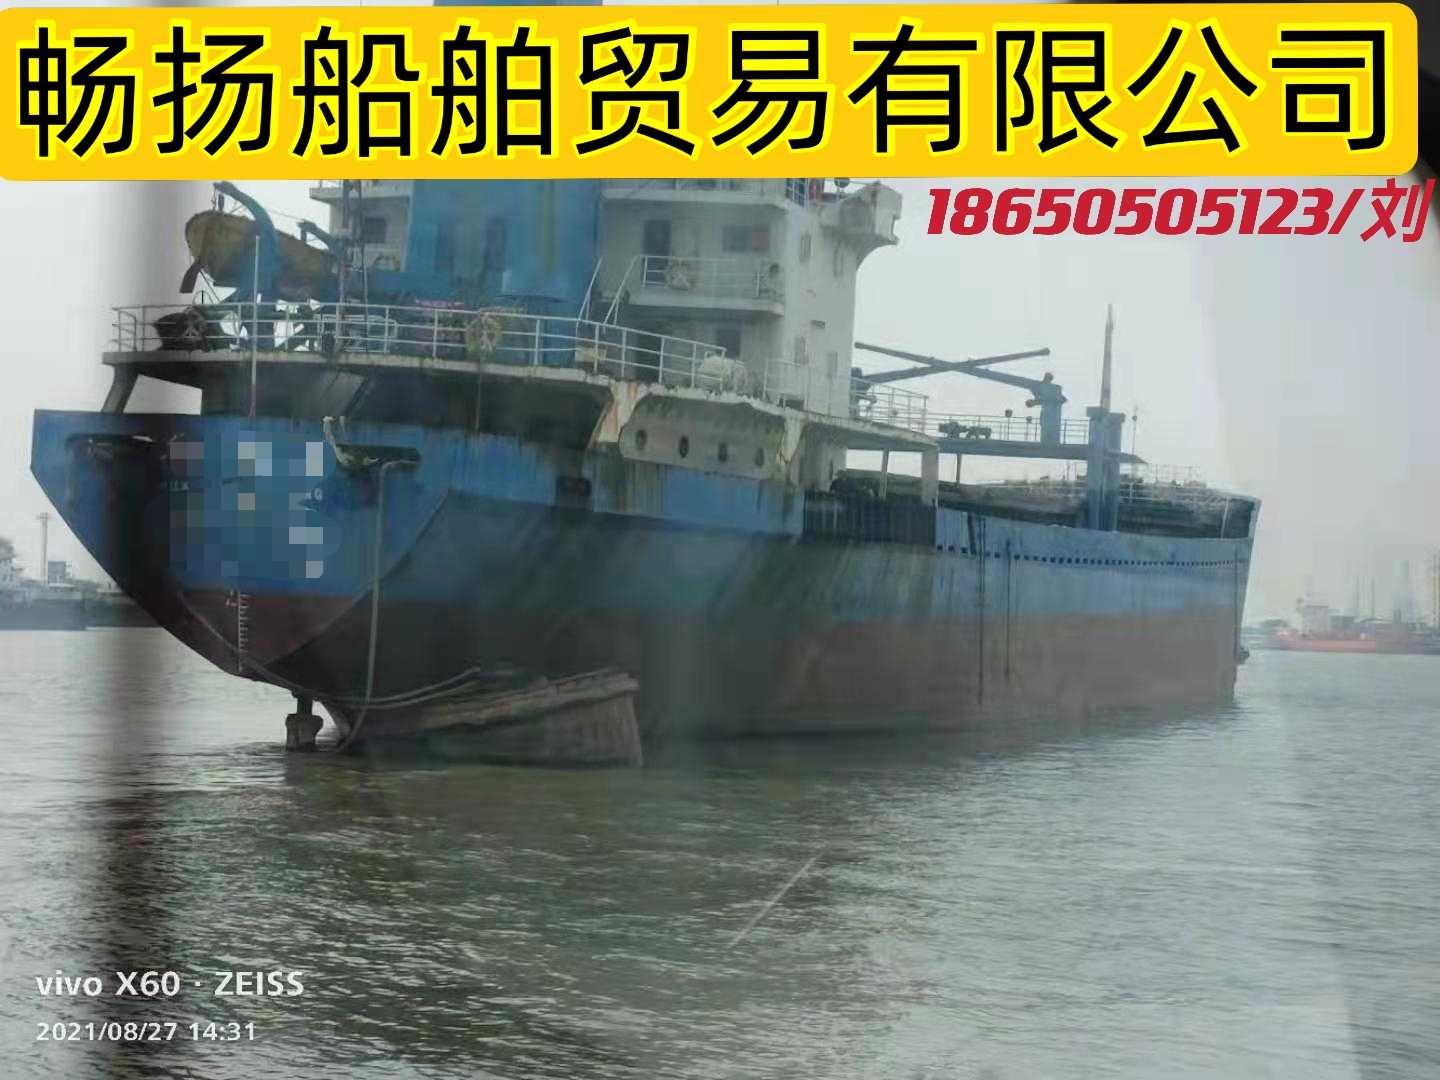 出售5100吨1998年货船